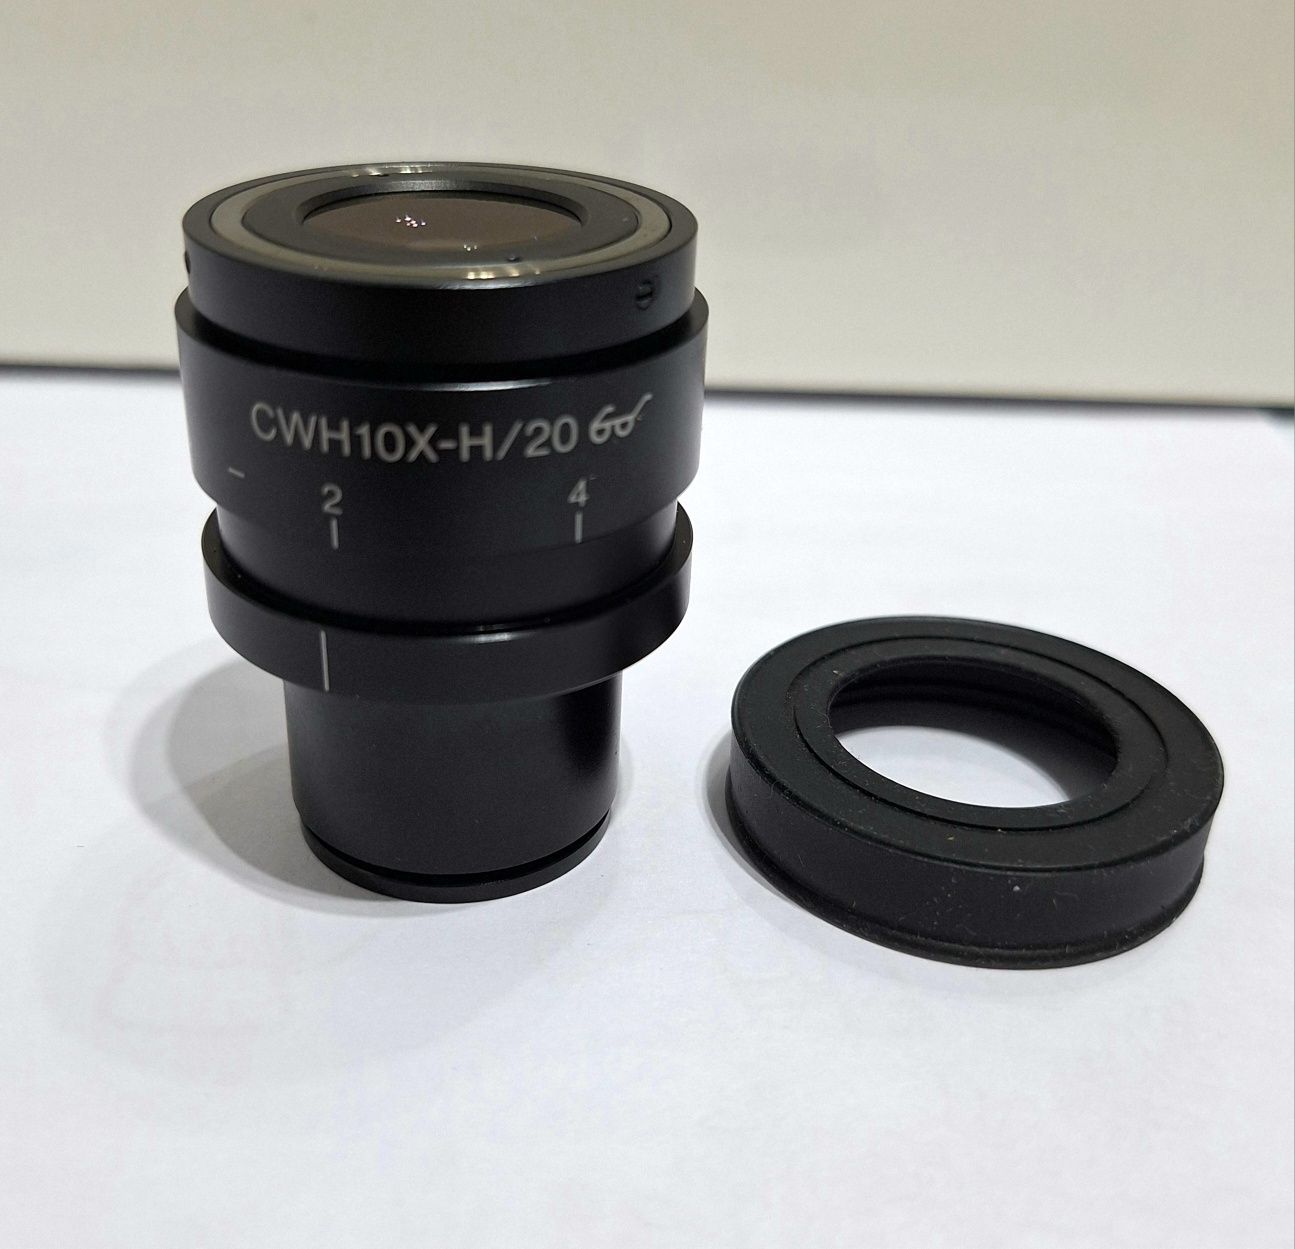 Okular Olympus CWH10X-H/20